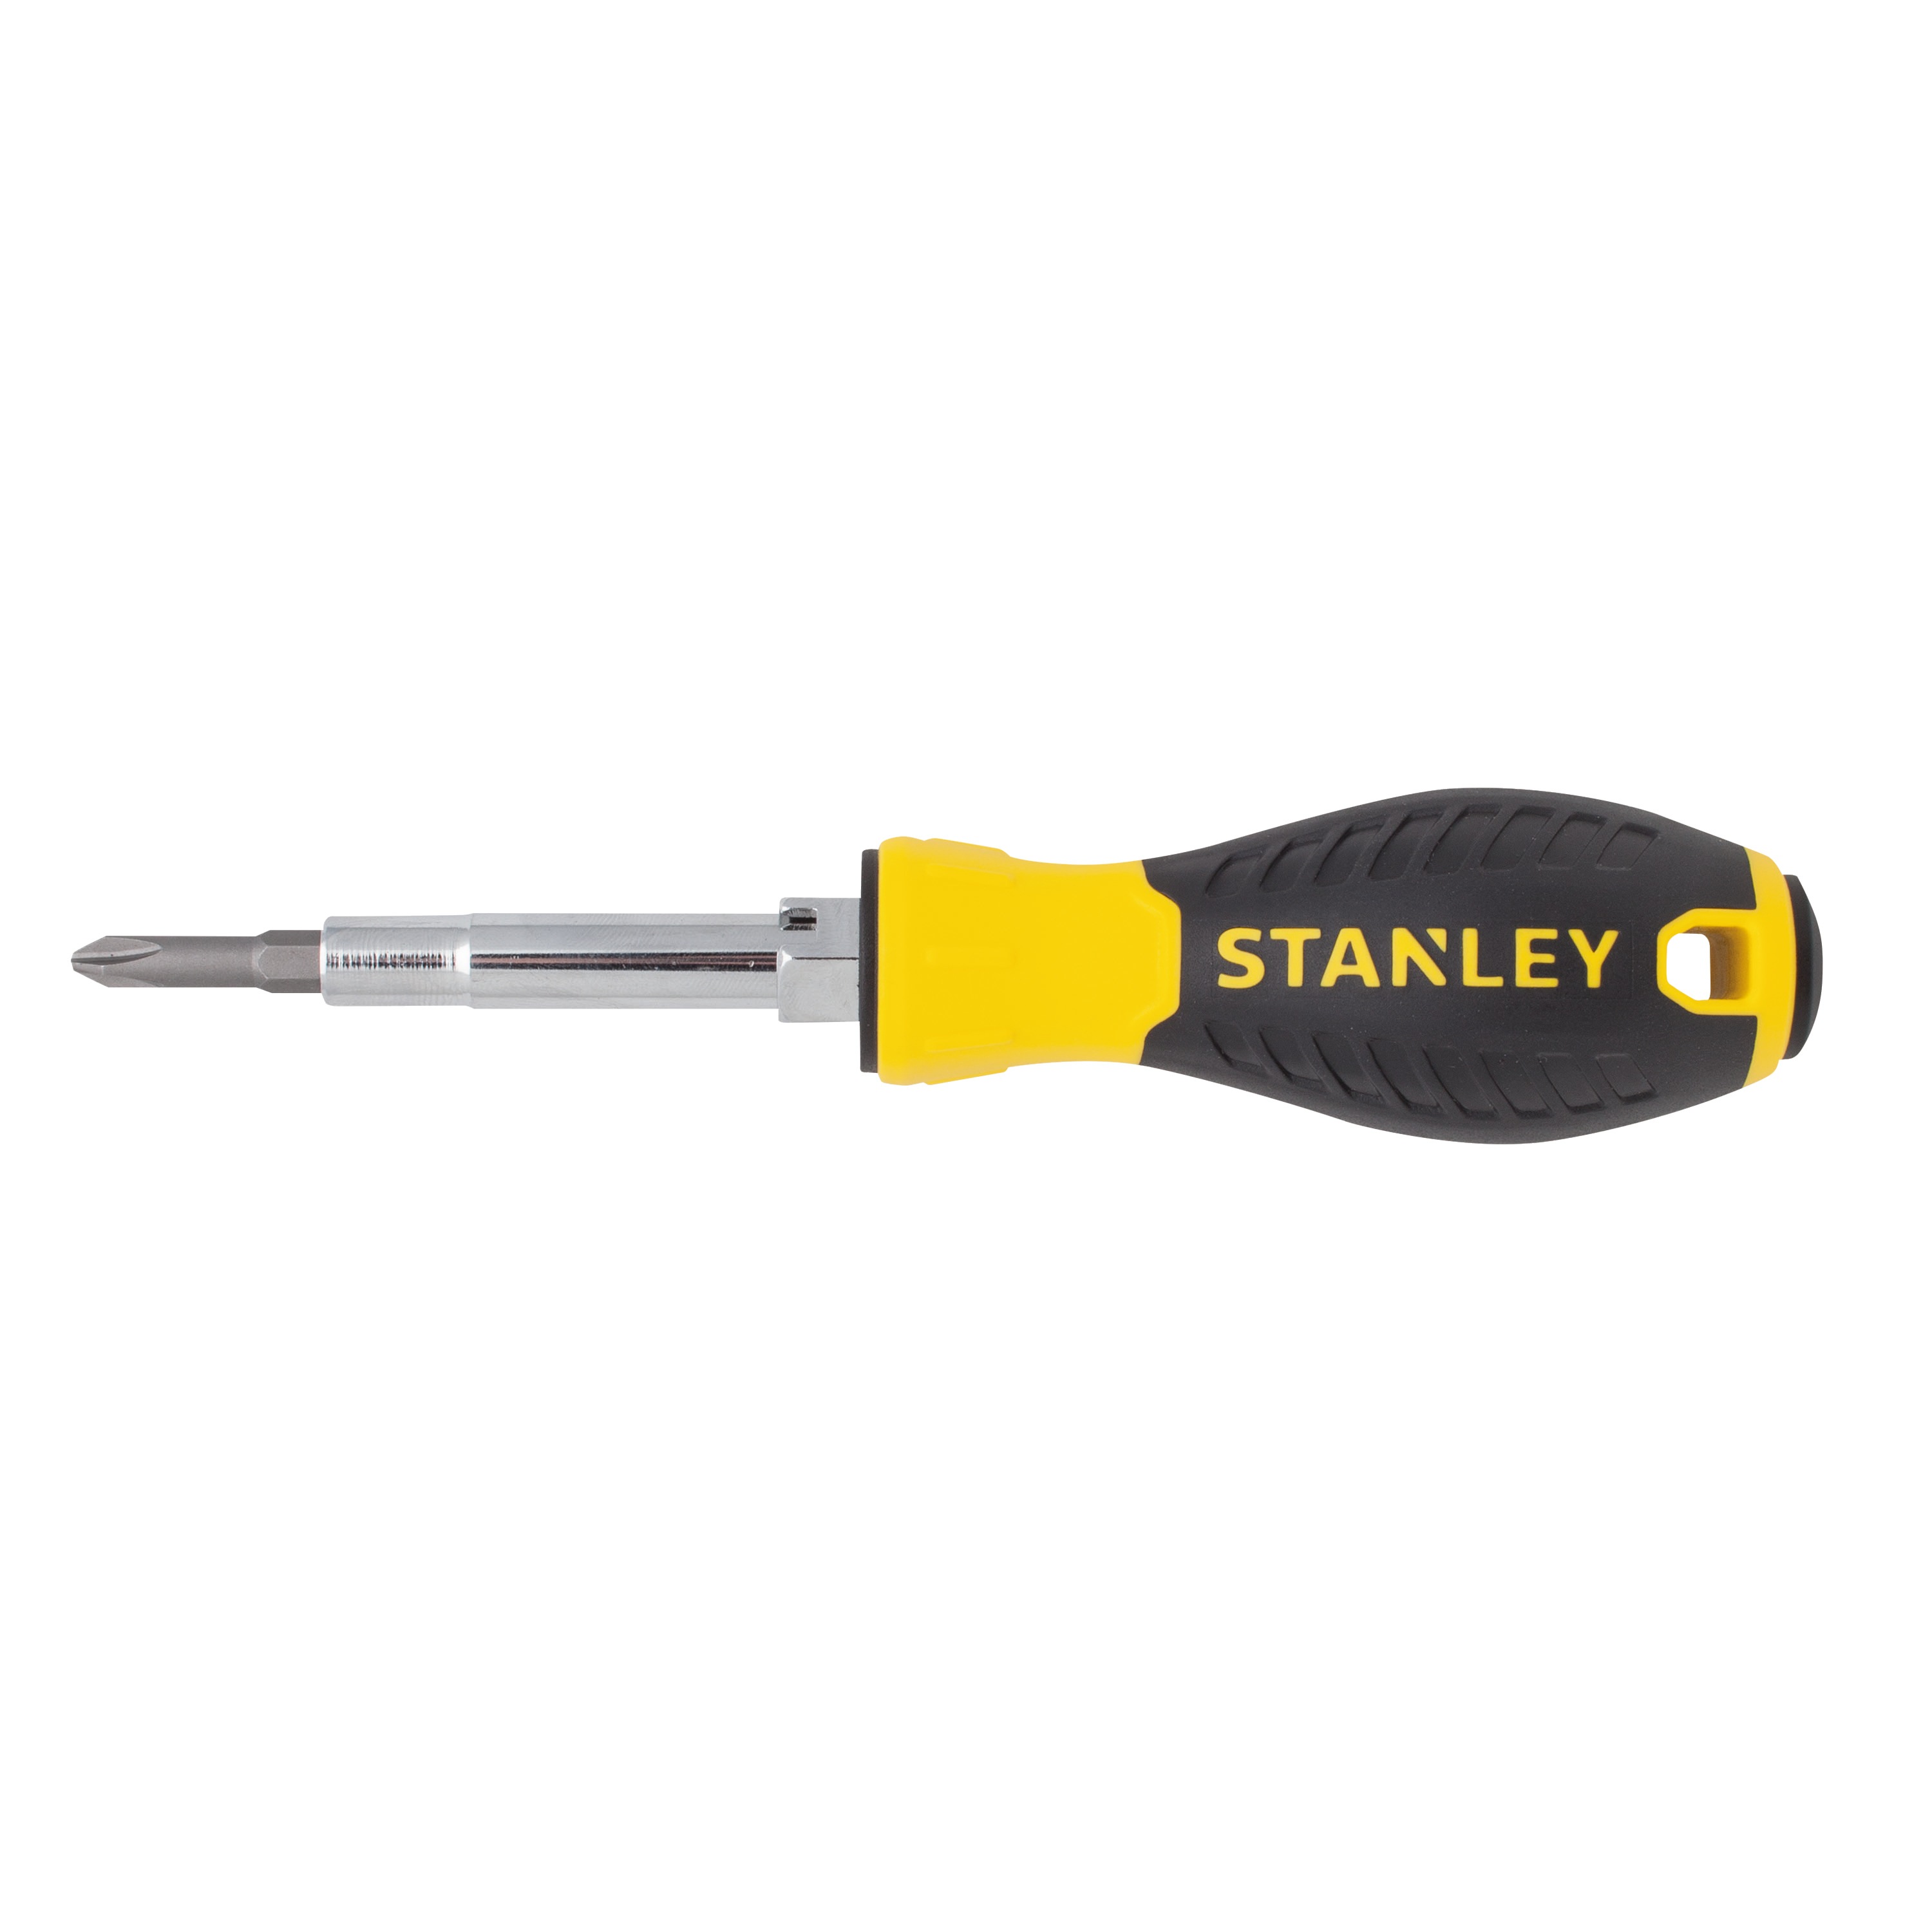 6 Way Screwdriver 68 012 Stanley Tools